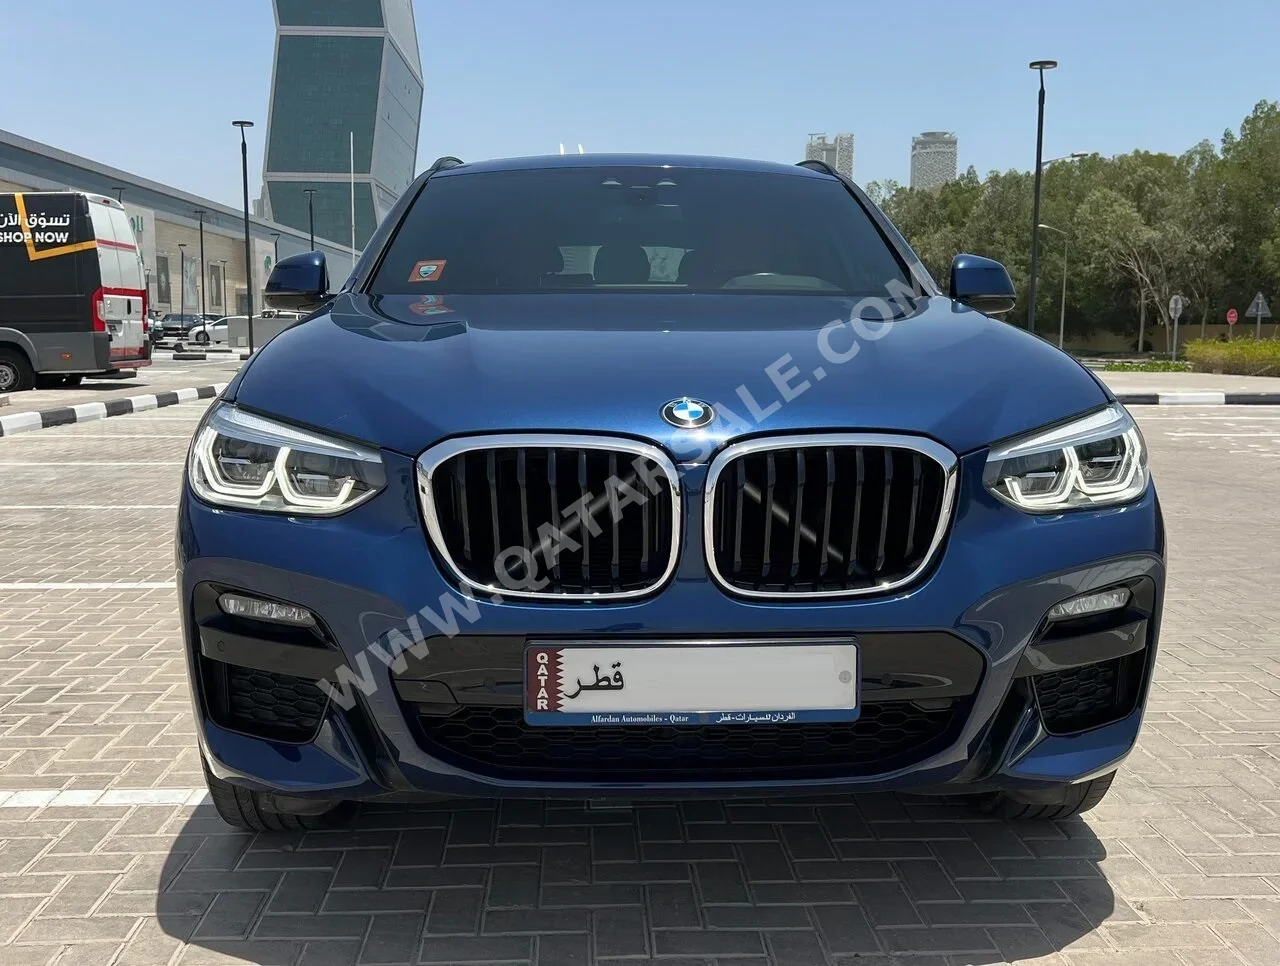 BMW  X-Series  X4  2020  Automatic  42,000 Km  4 Cylinder  Four Wheel Drive (4WD)  SUV  Blue  With Warranty